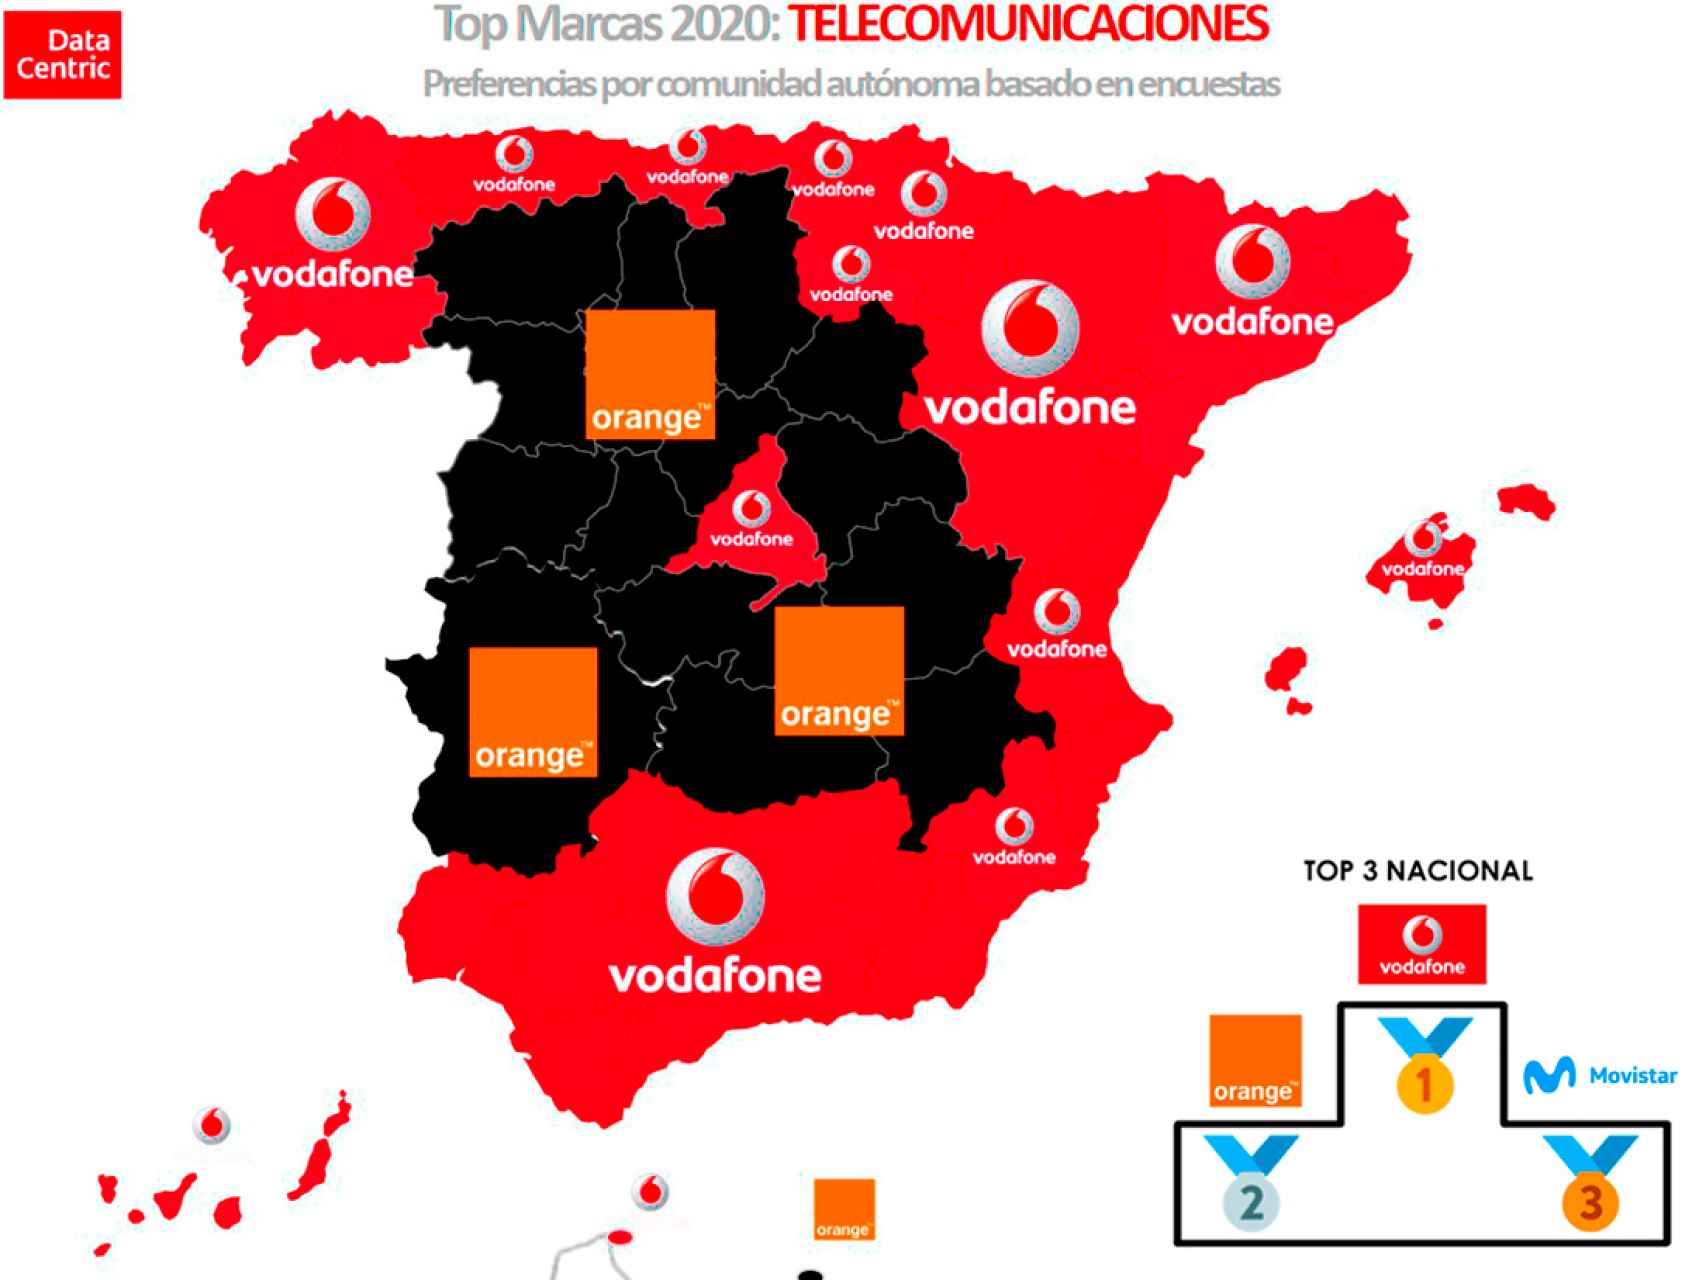 El mapa de las marcas favoritas de telecomunicaciones en España en 2020.